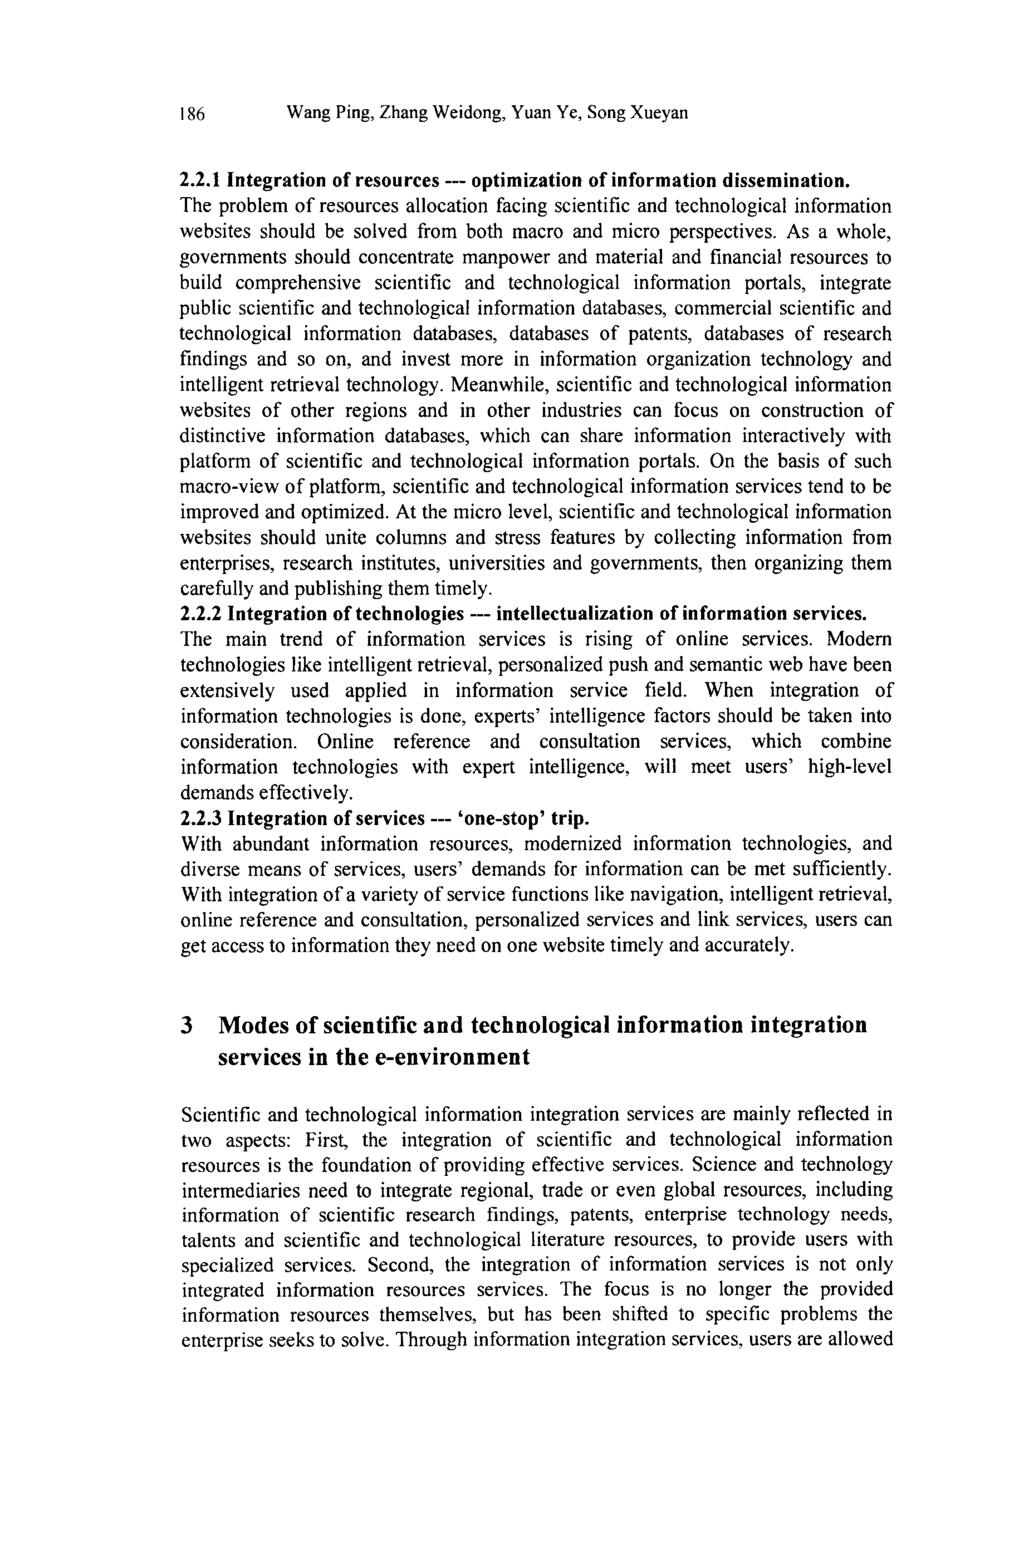 186 Wang Ping, Zhang Weidong, Yuan Ye, Song Xueyan 2.2.1 Integration of resources optimization of information dissemination.